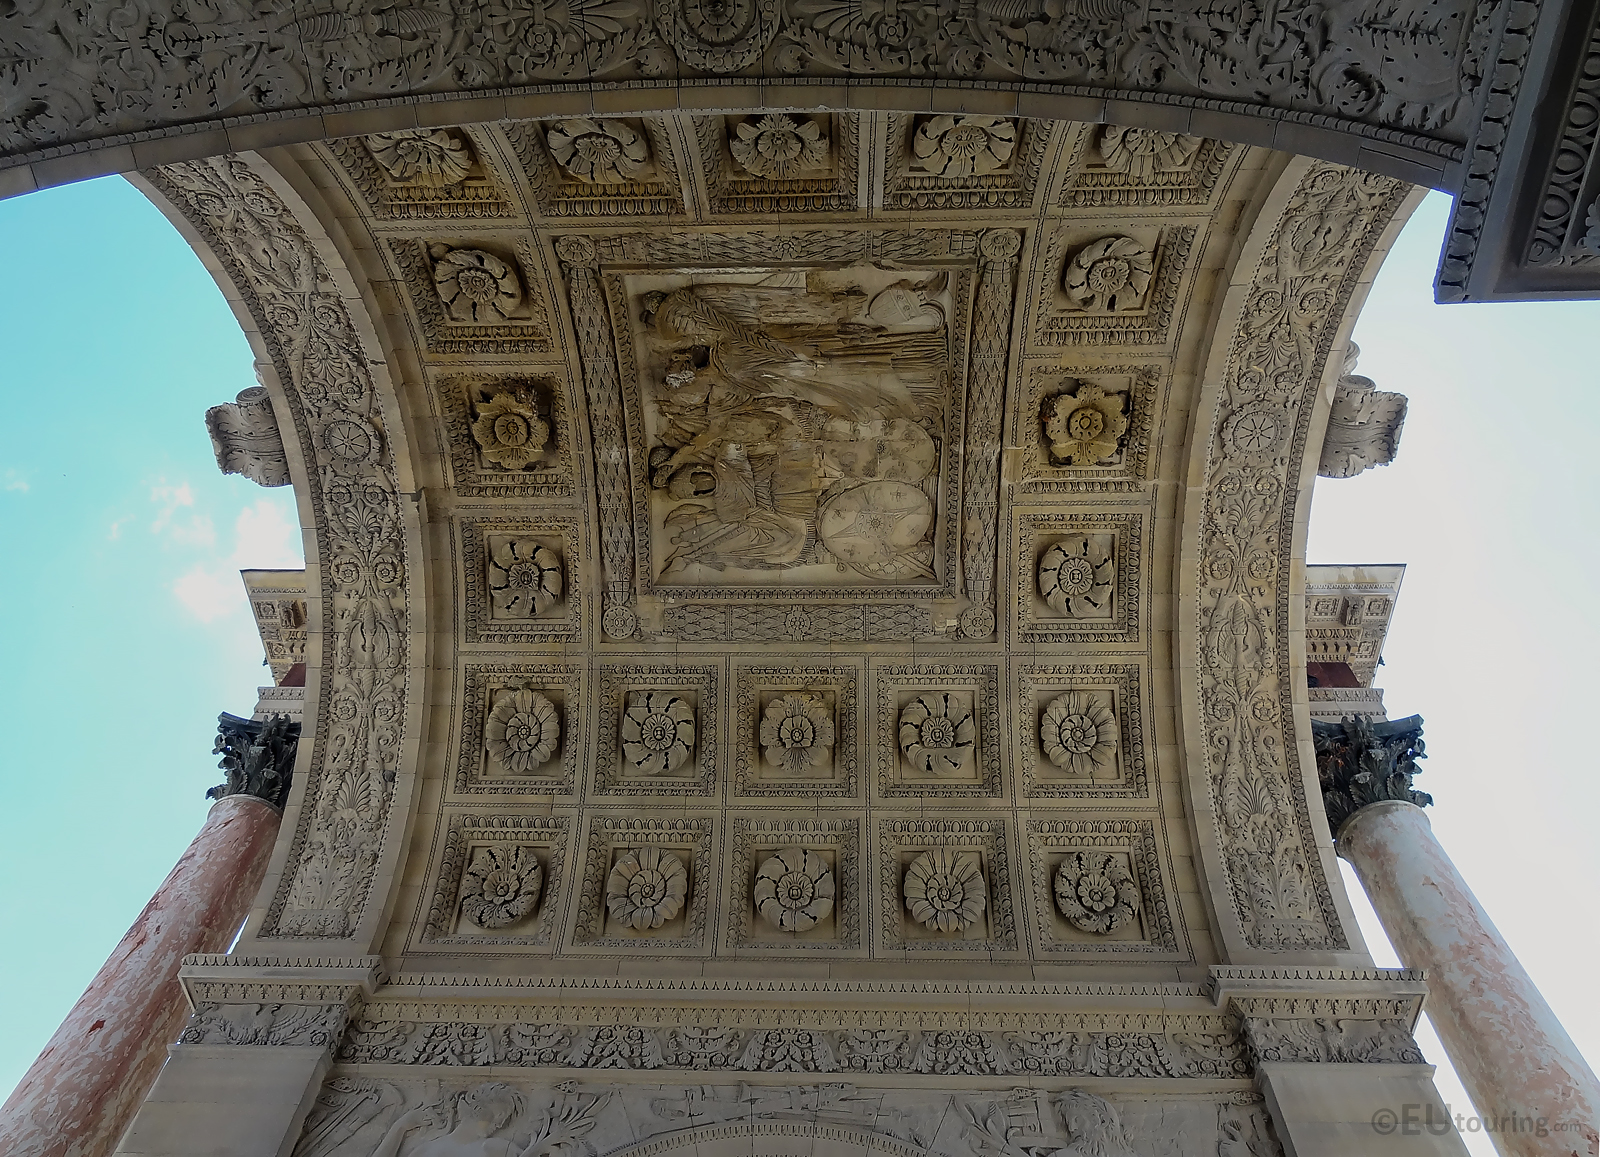 Detailed ceiling of the Arc de Triomphe du Carrousel